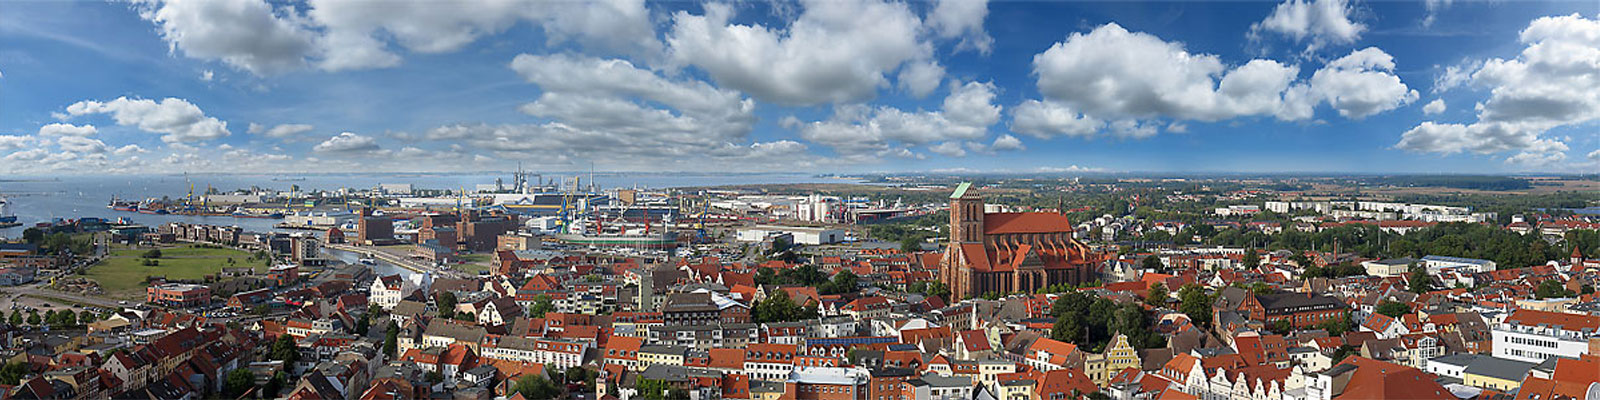 Panorama: Wismar von oben - Motivnummer: hwi-alt-02